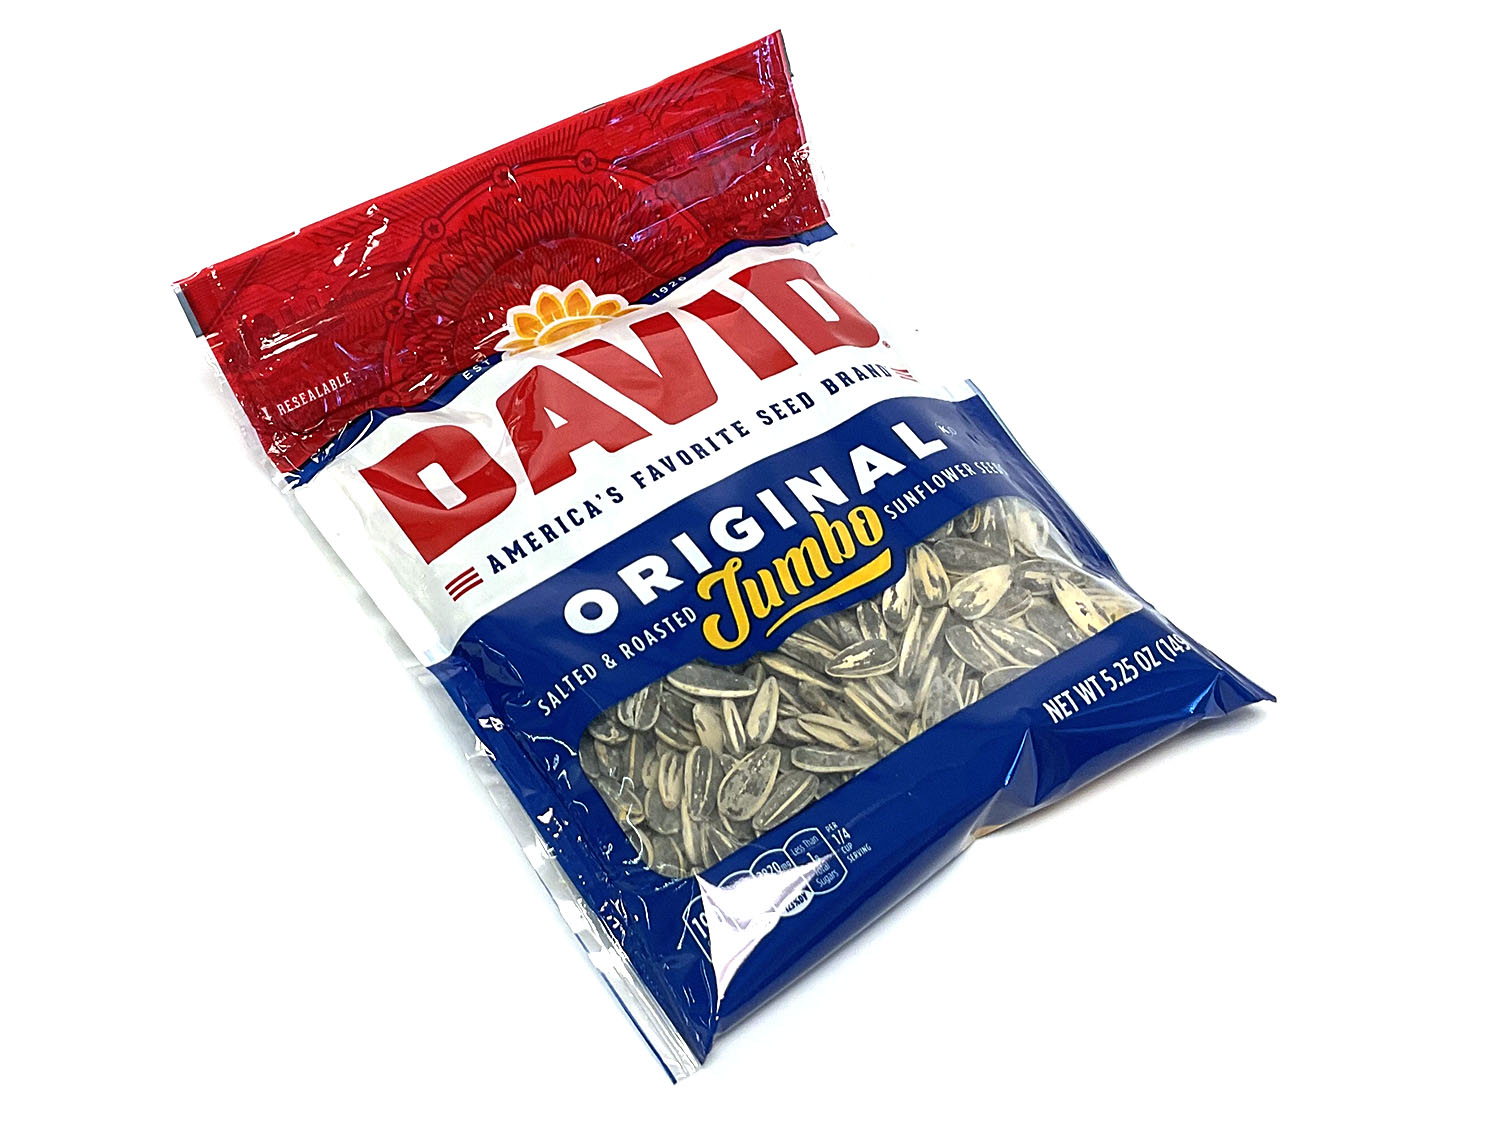 David Sunflower Seeds - Original - 5.25 oz bag